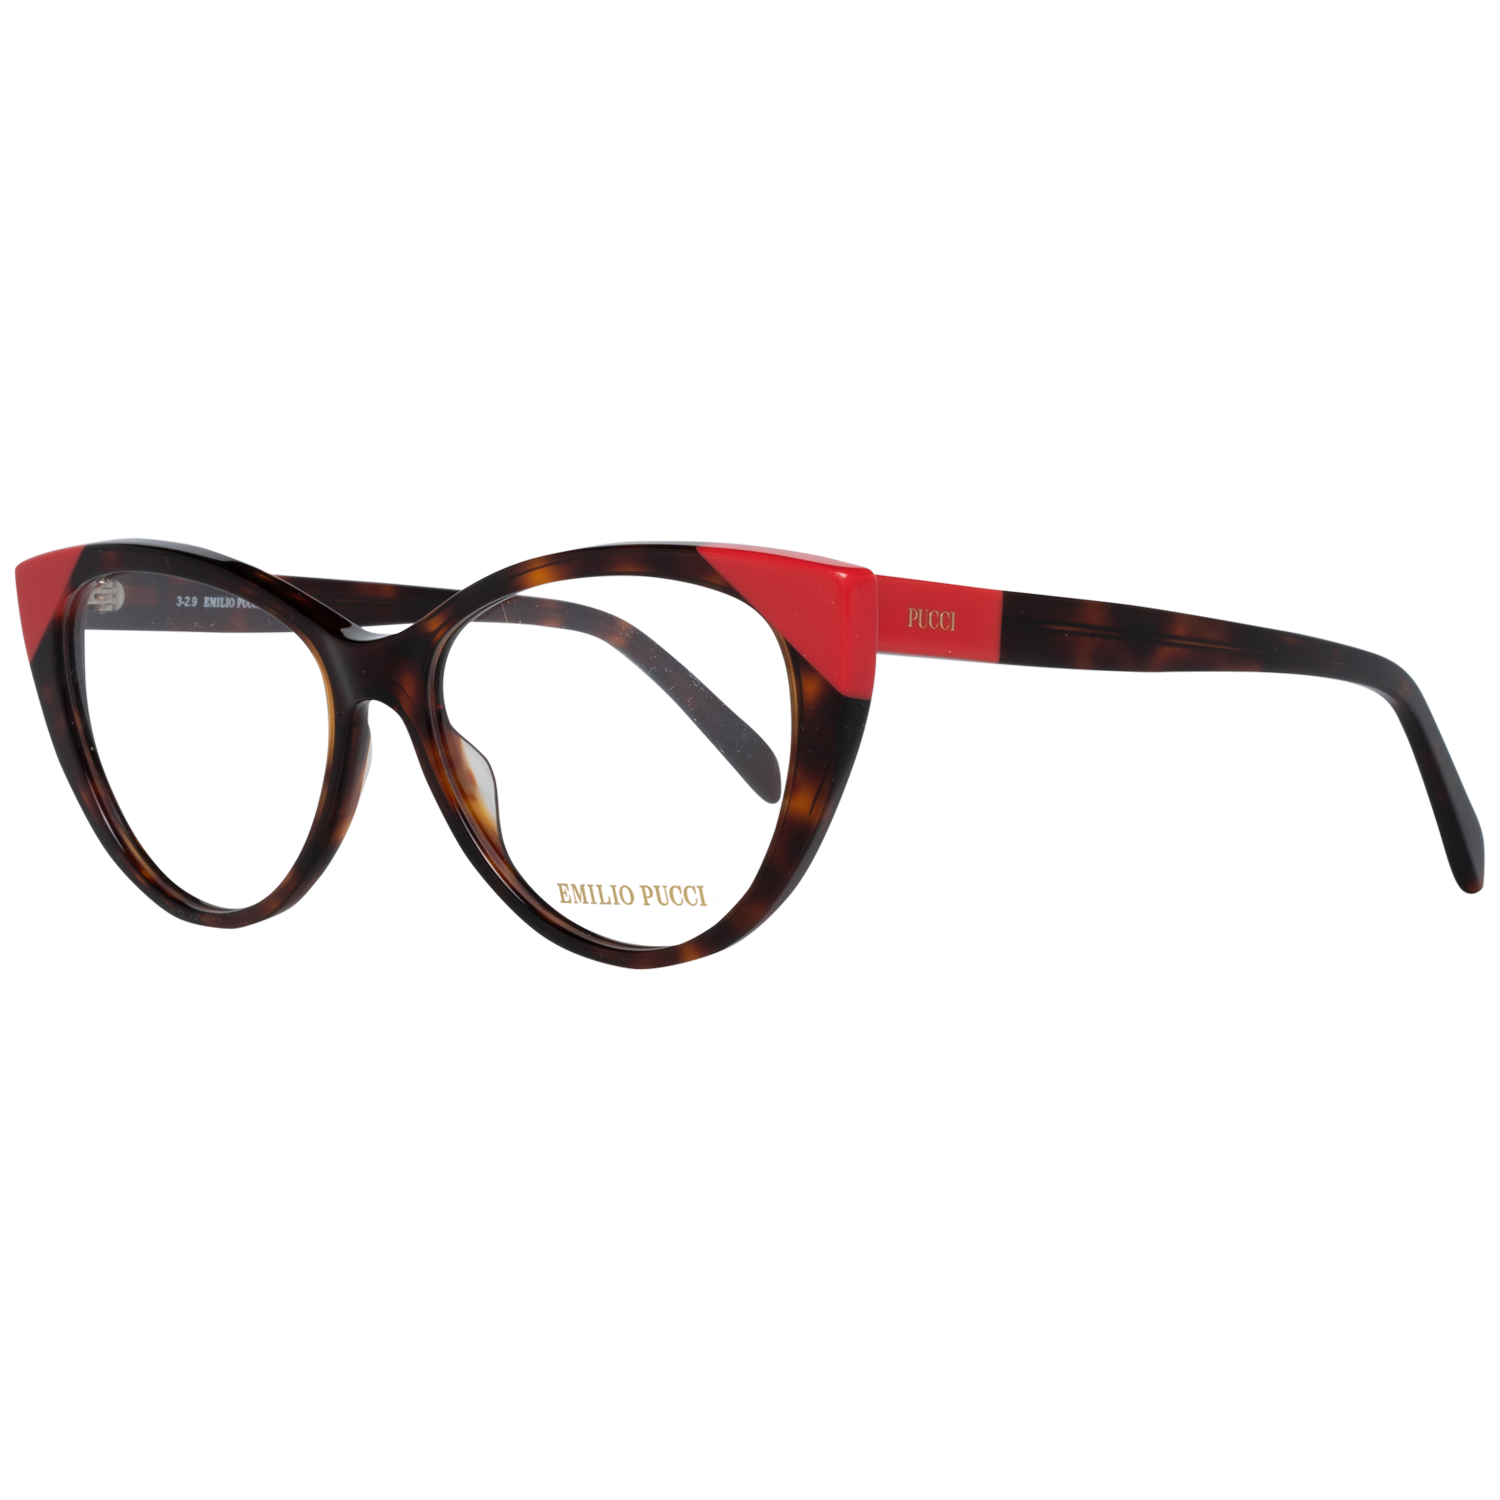 Emilio Pucci Frames Emilio Pucci Optical Frame EP5116 056 54 Eyeglasses Eyewear UK USA Australia 